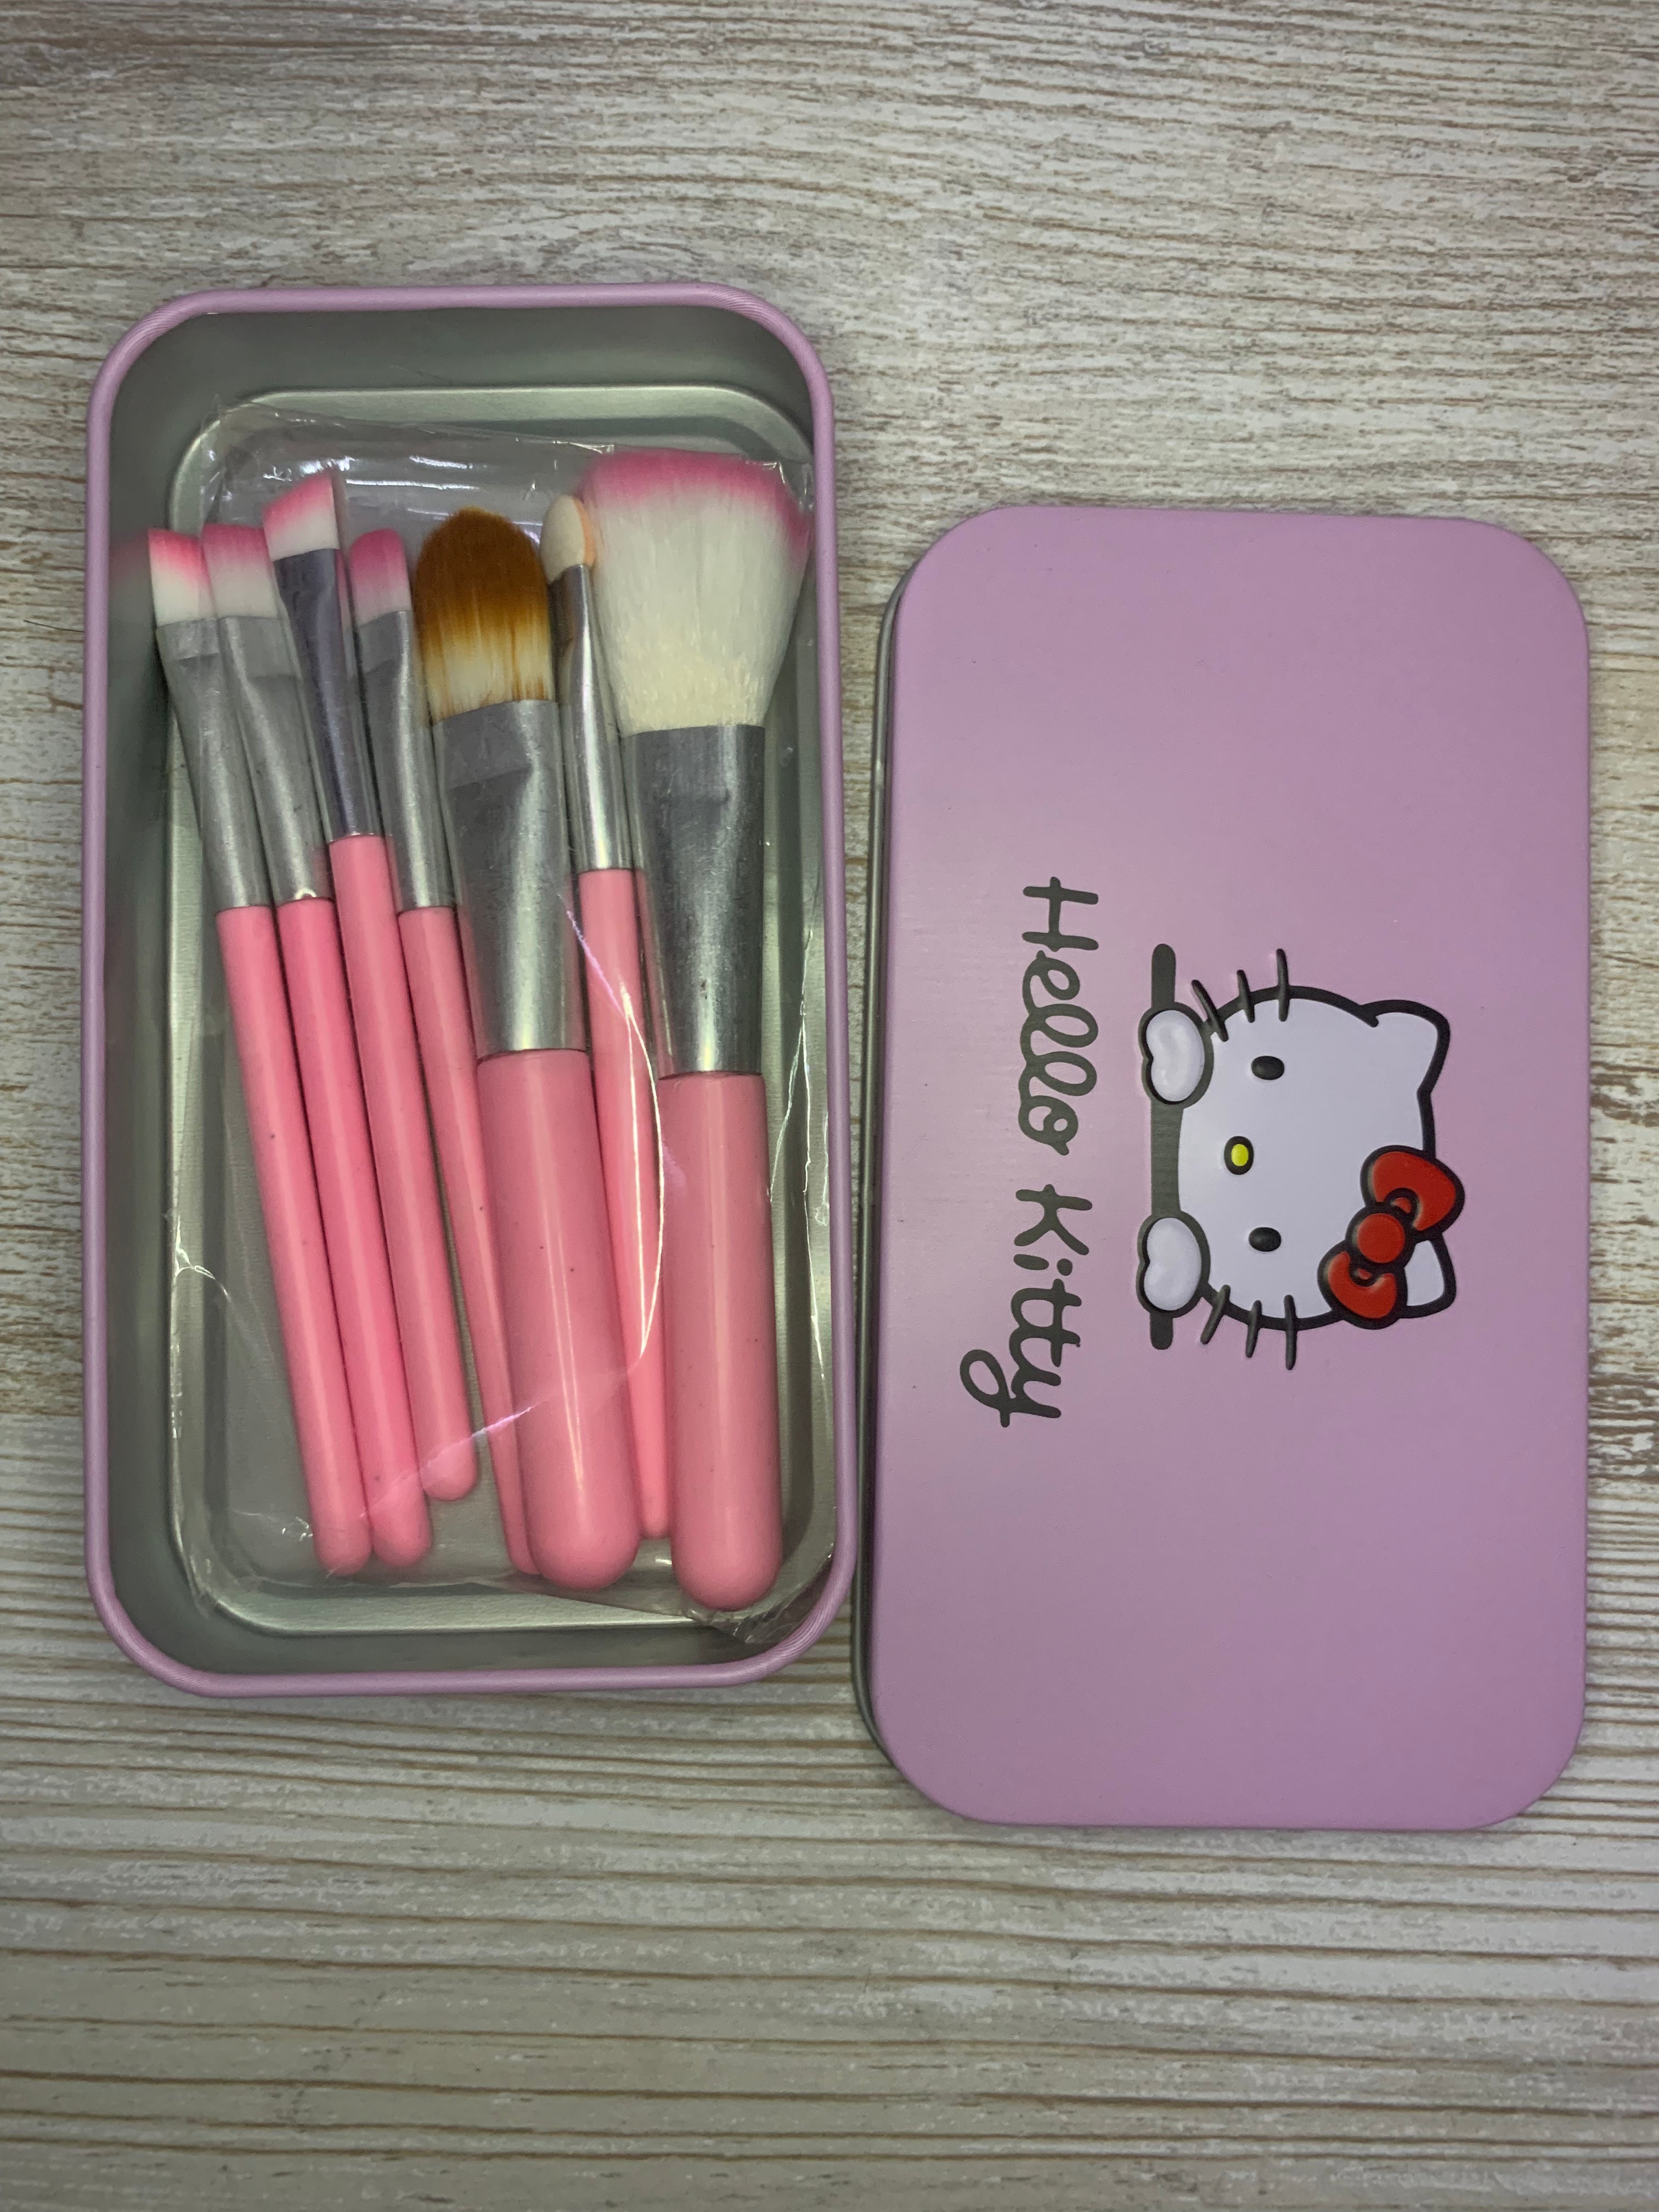 Fameza ello Kitty Set of 7 Pieces Complete Makeup Mini Brush Kit with a  Storage Plastic Box